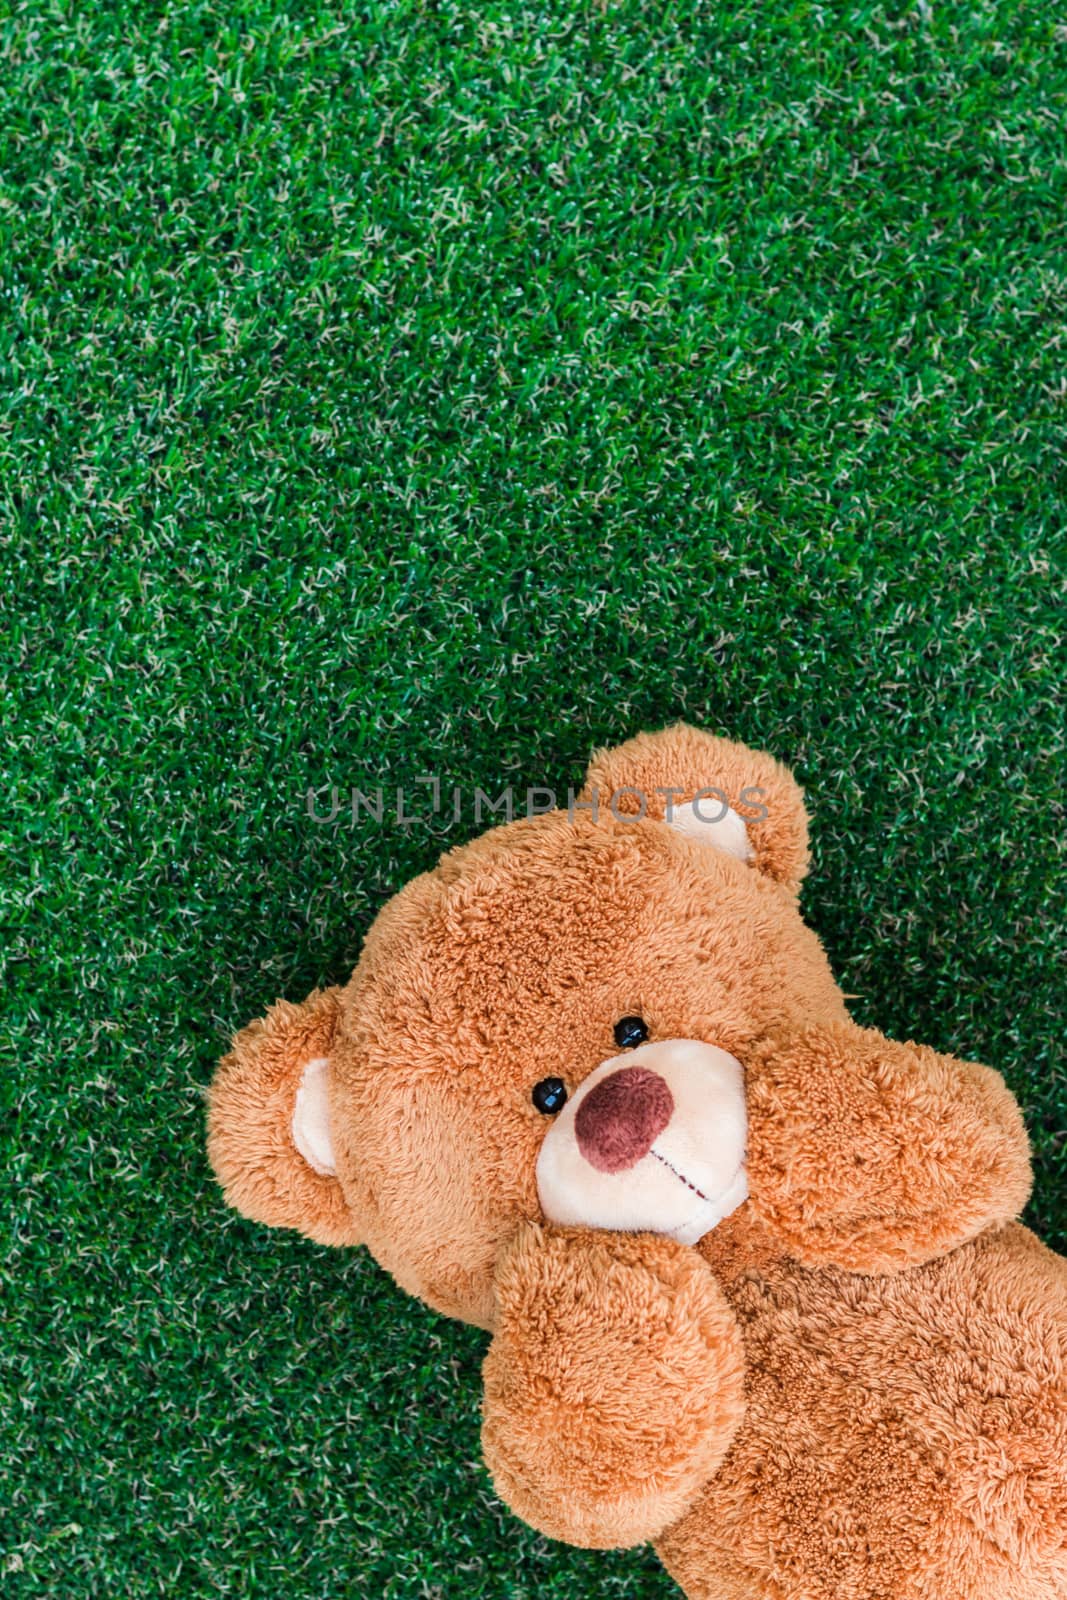 Cute teddy bear by AEyZRiO